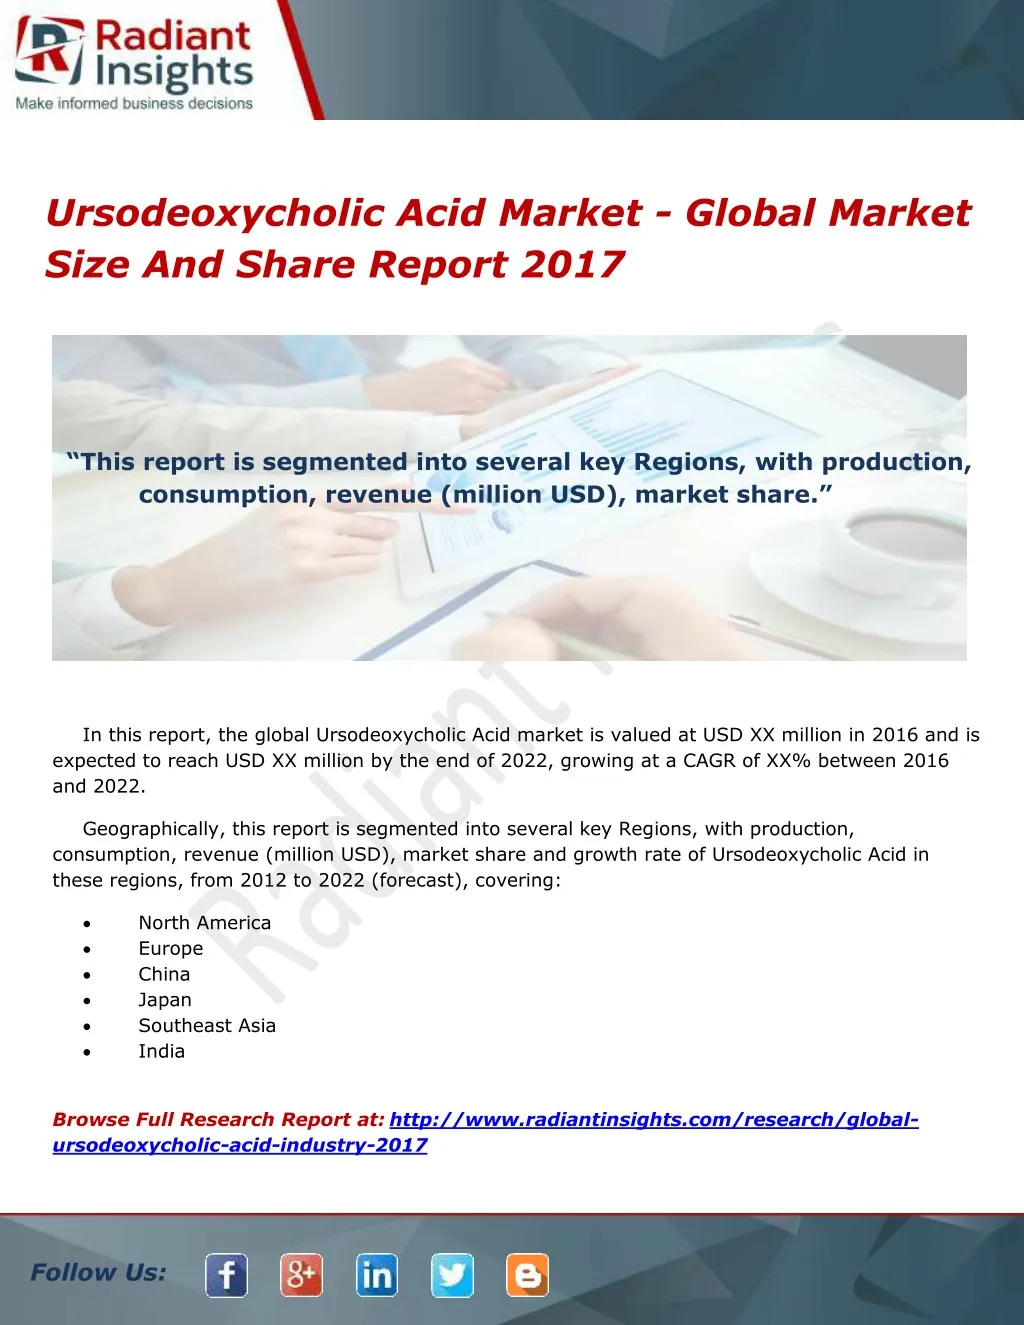 ursodeoxycholic acid market global market size